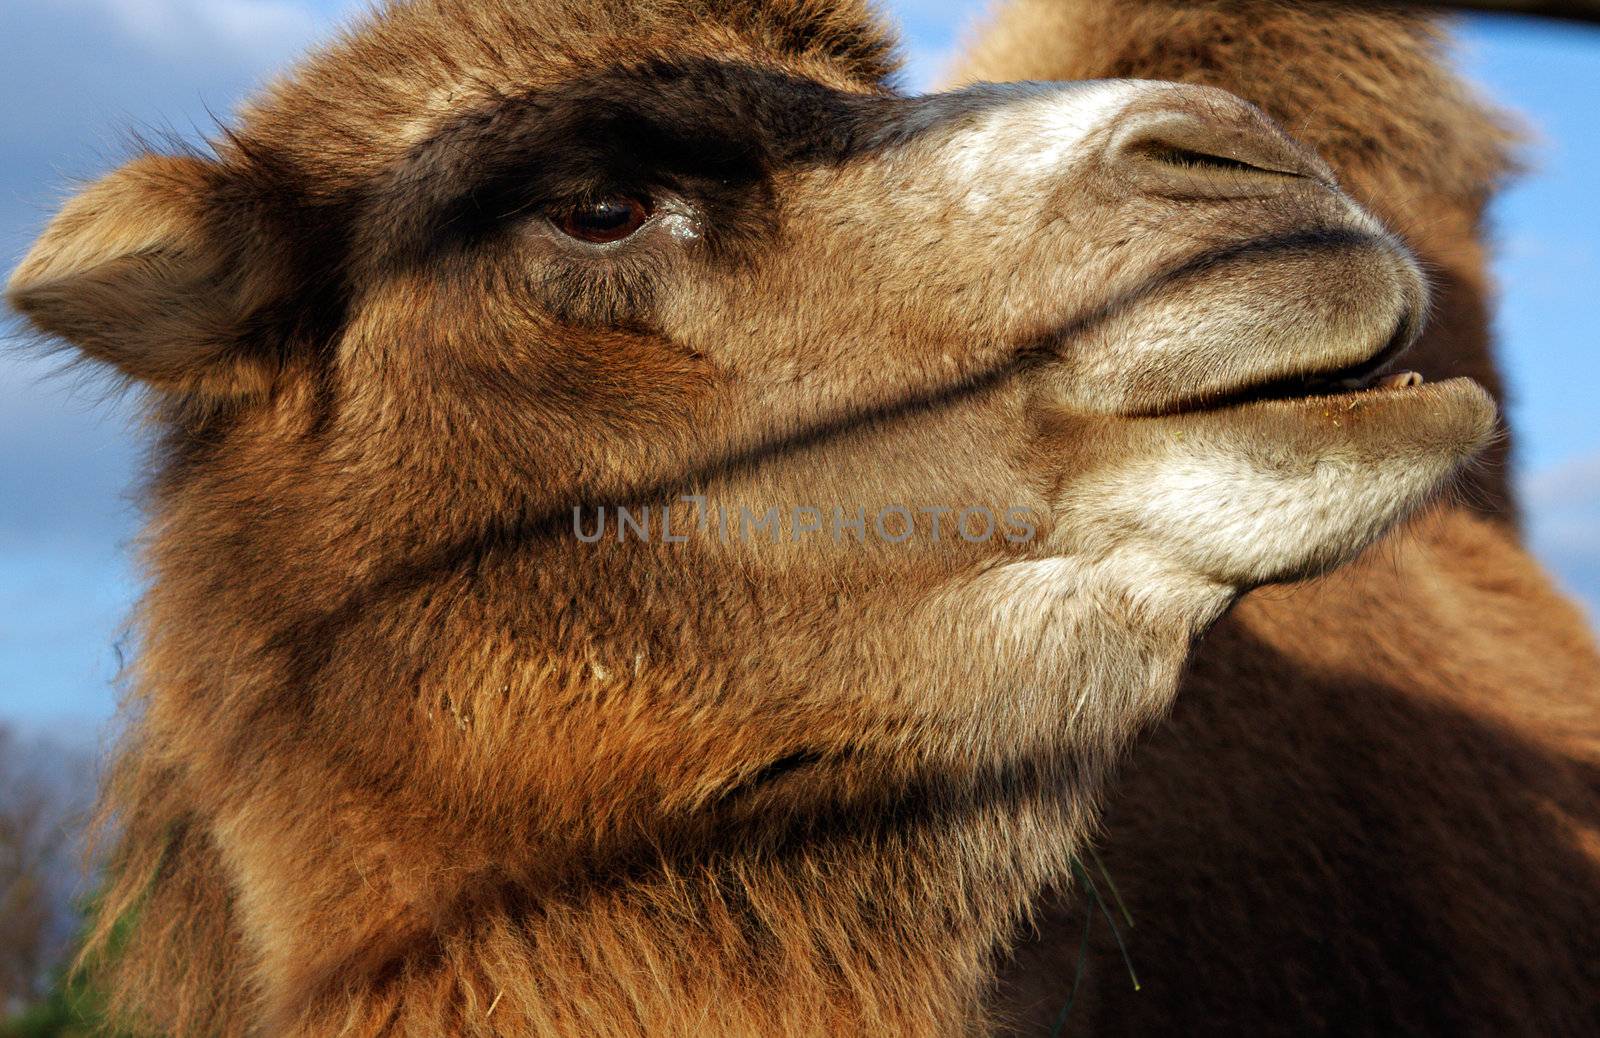 Head of a camel by Roka